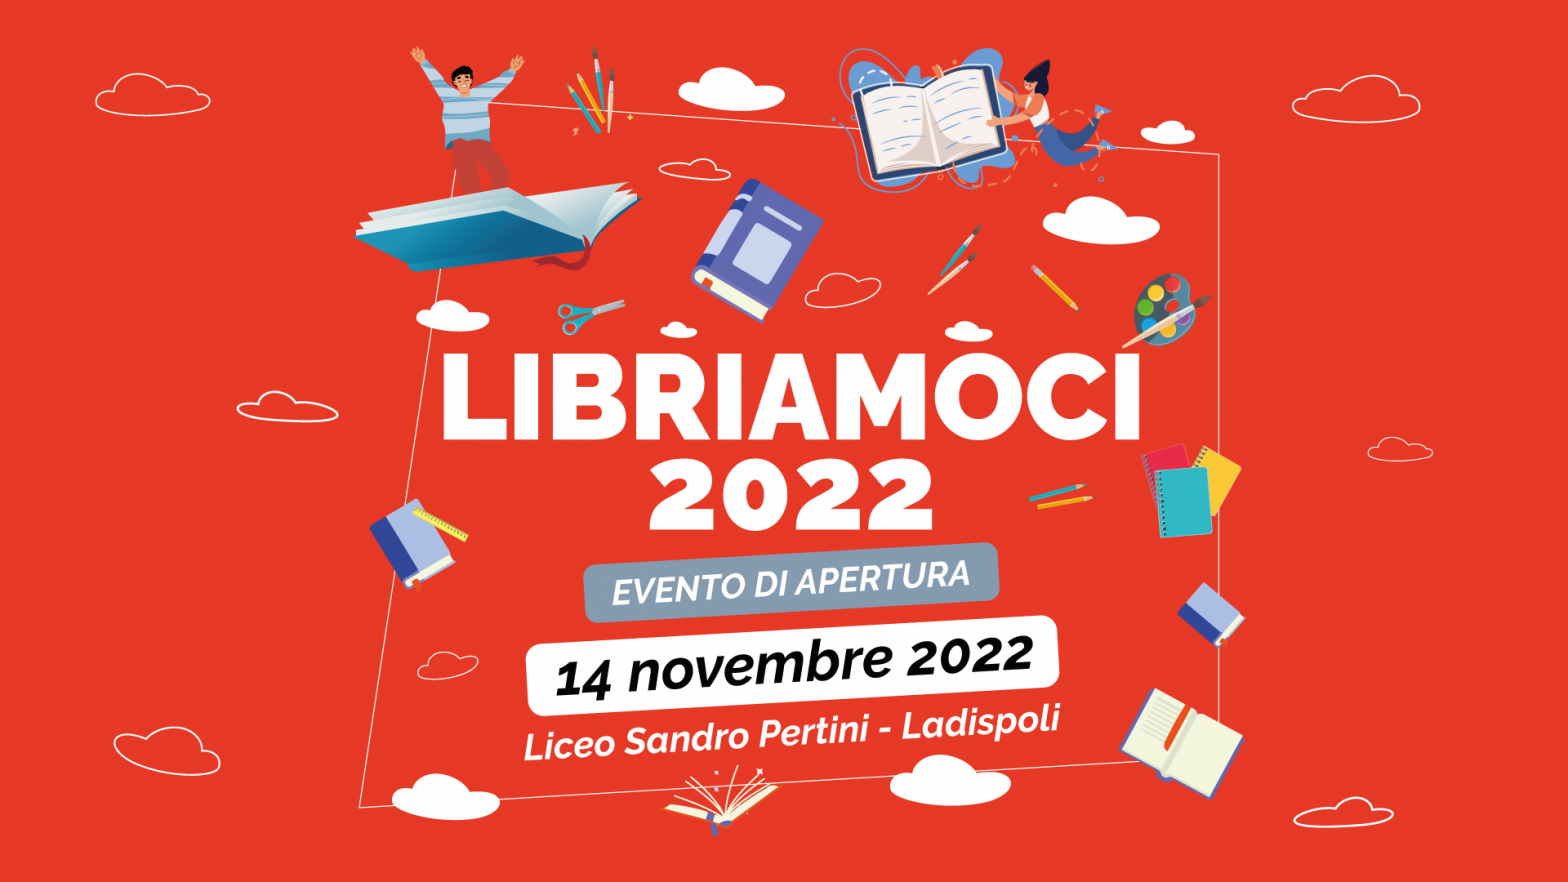 [VIDEO] L’evento inaugurale di Libriamoci 2022 con Daniele Mencarelli